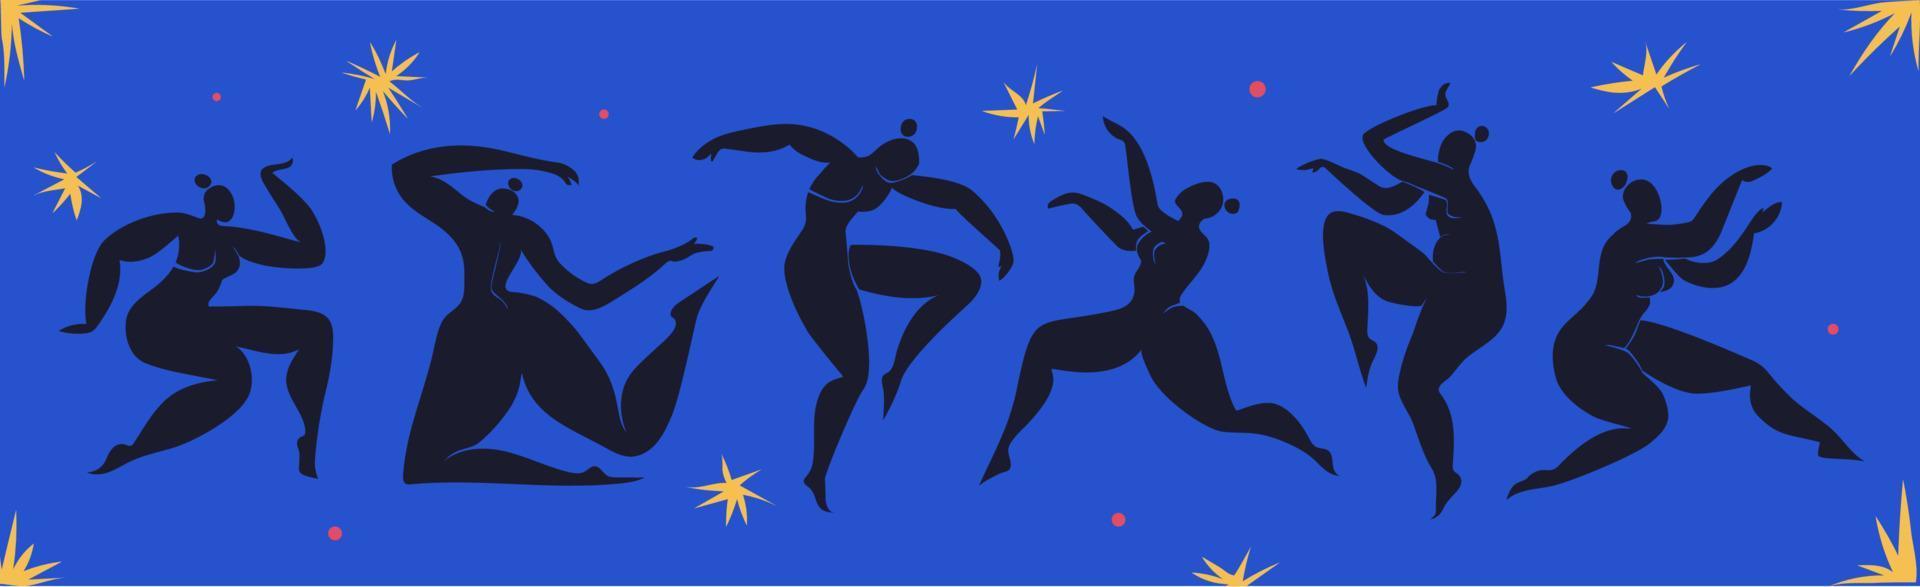 Matisse a inspiré les danseuses. ensemble de silhouettes féminines découpées sur fond bleu avec des étoiles. femmes courbes abstraites découpées en noir. illustration vectorielle inspirée de matisse. vecteur